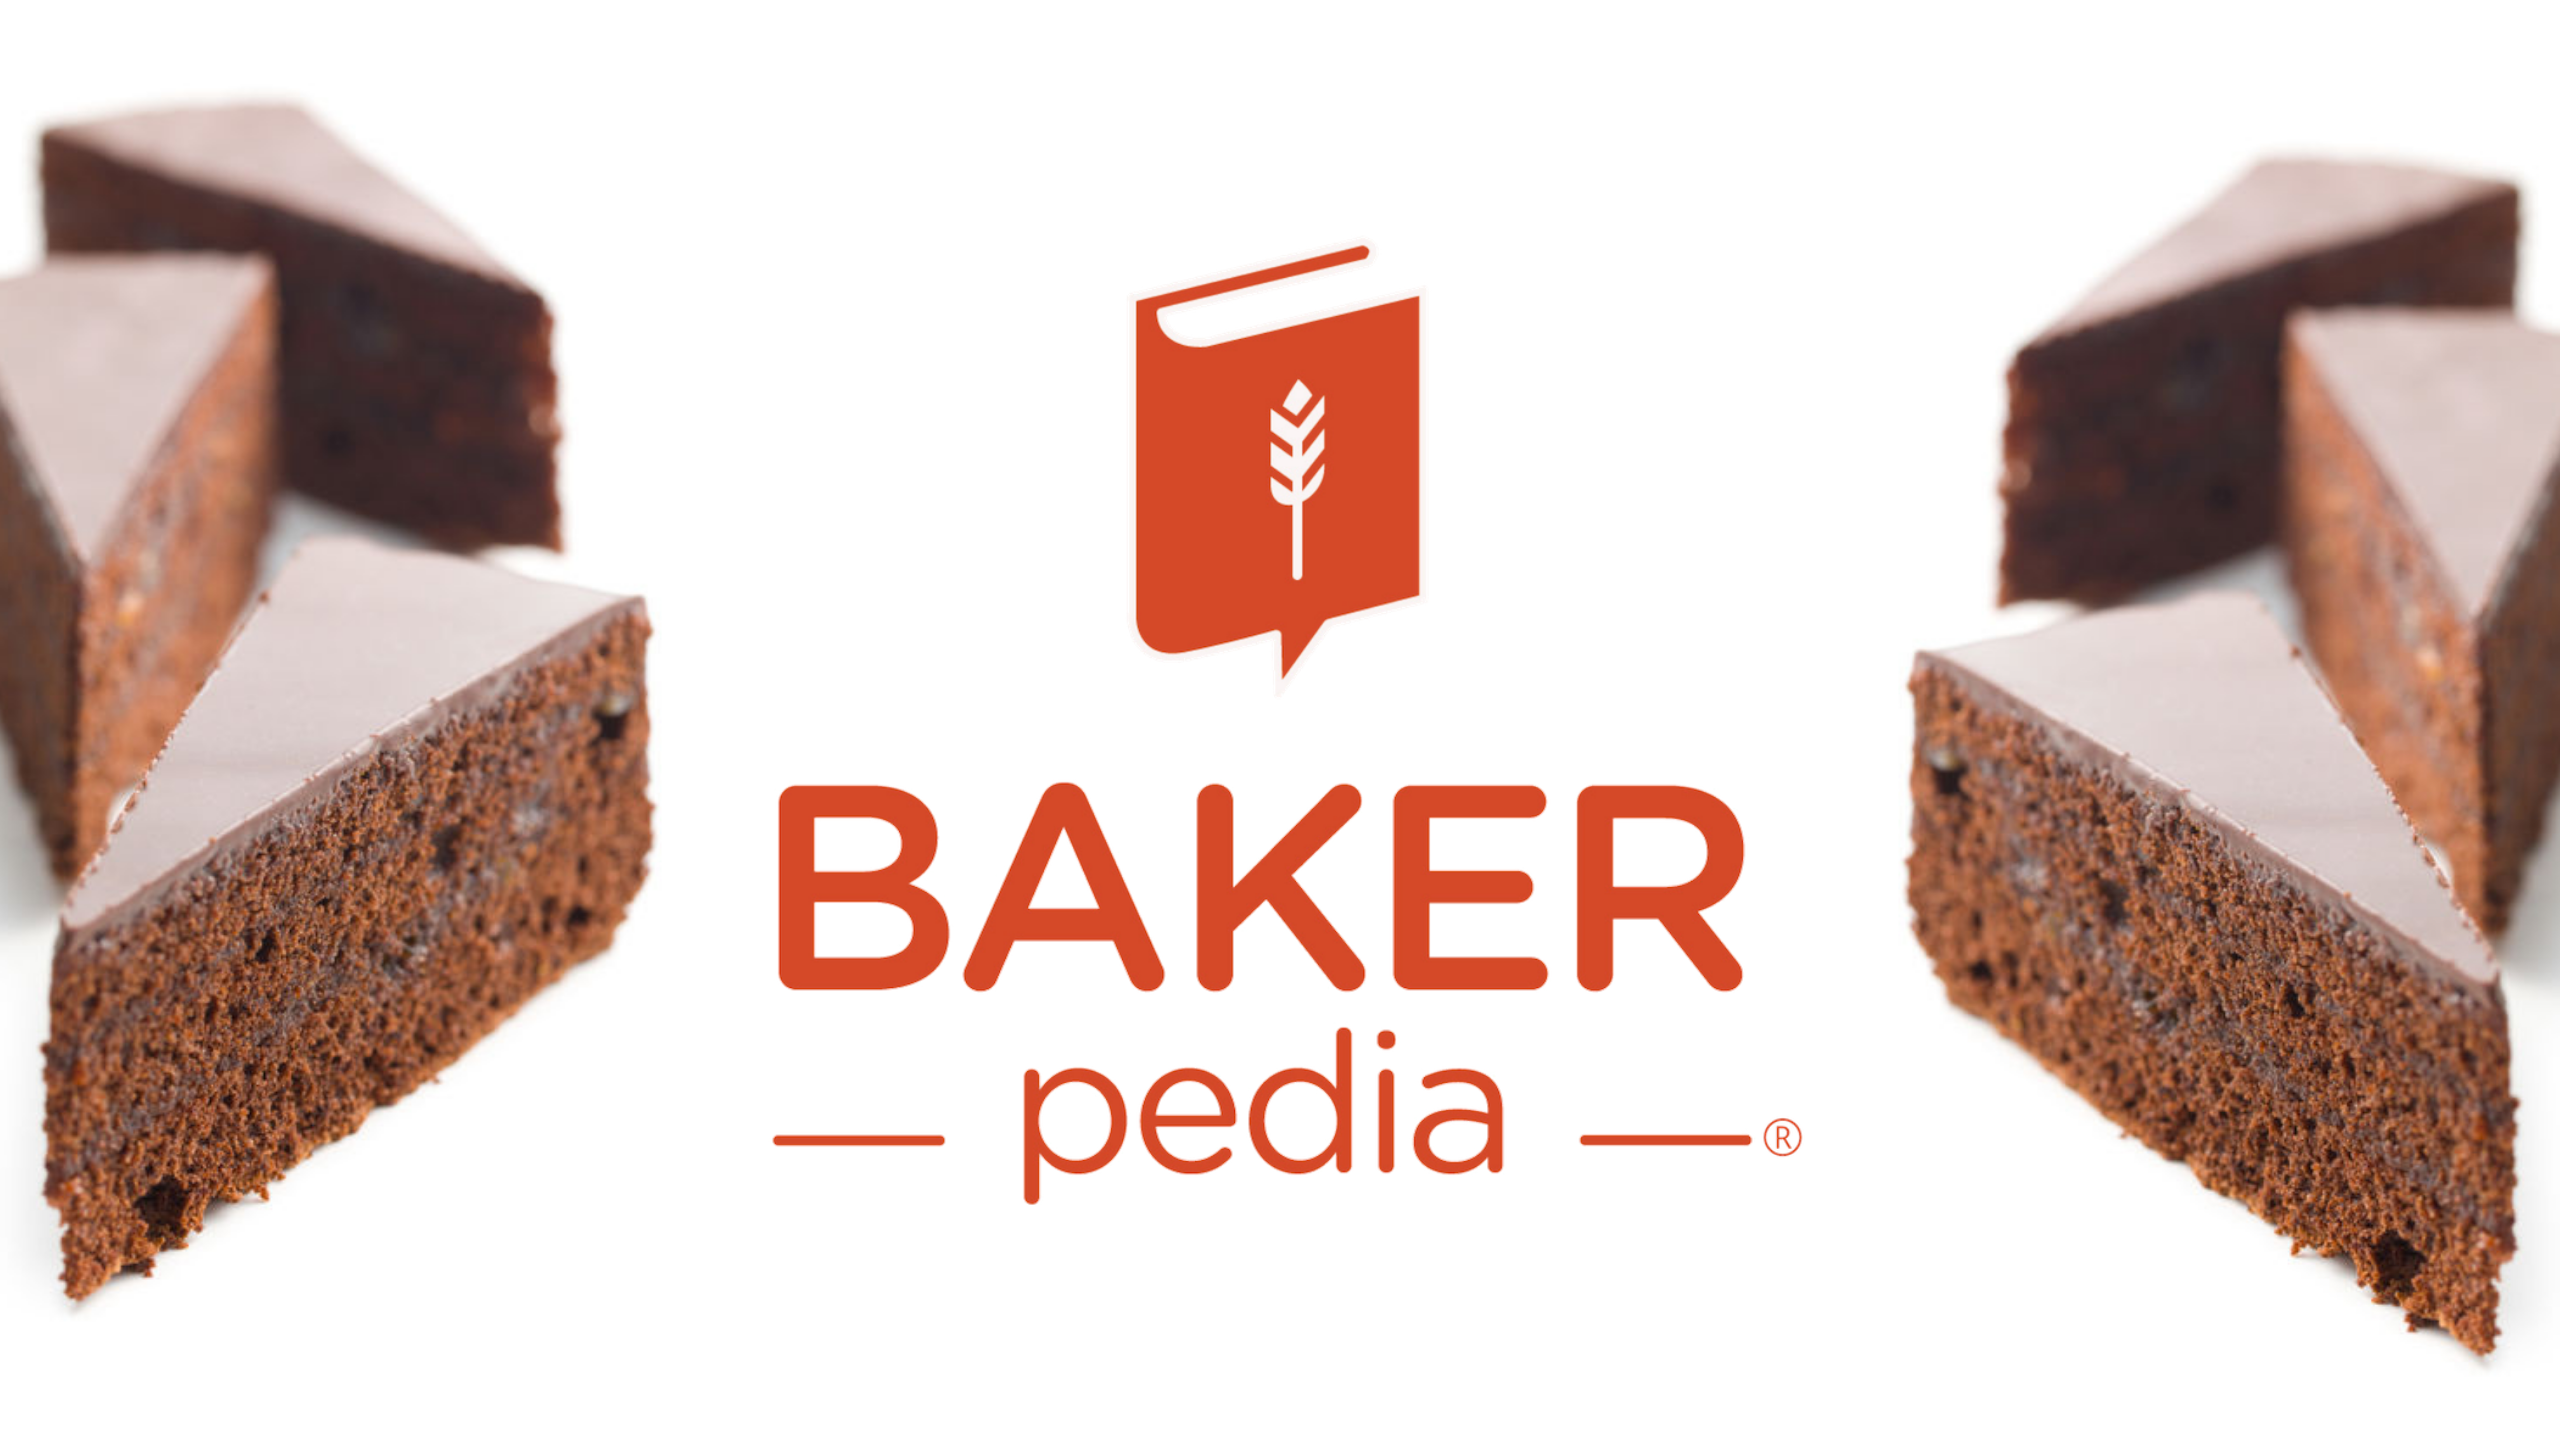 BAKERpedia: Bạn yêu thích nghề nấu bánh hay muốn tìm kiếm những thông tin mới nhất về ngành này? Với bức ảnh liên quan đến BAKERpedia, bạn sẽ tìm thấy những thông tin chính xác nhất từ chuyên gia hàng đầu về nghành công nghiệp mỳ và bánh.